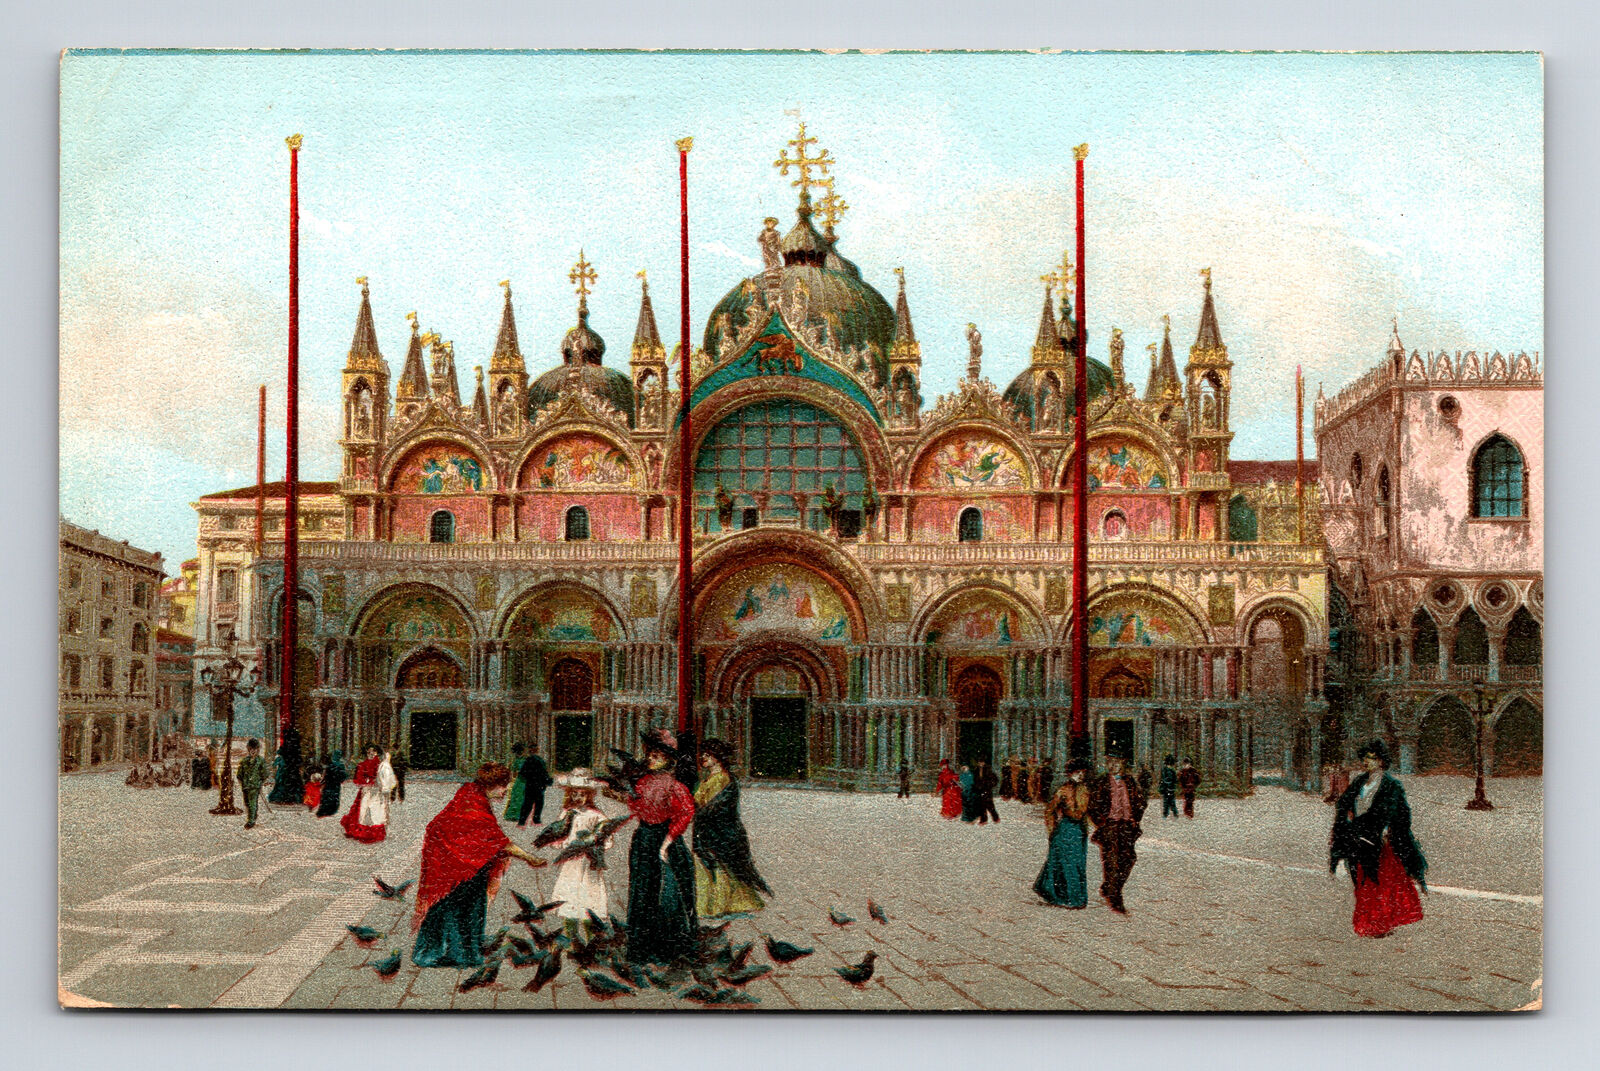 St. Marks San Marco Basilica Venice Italy Postcard